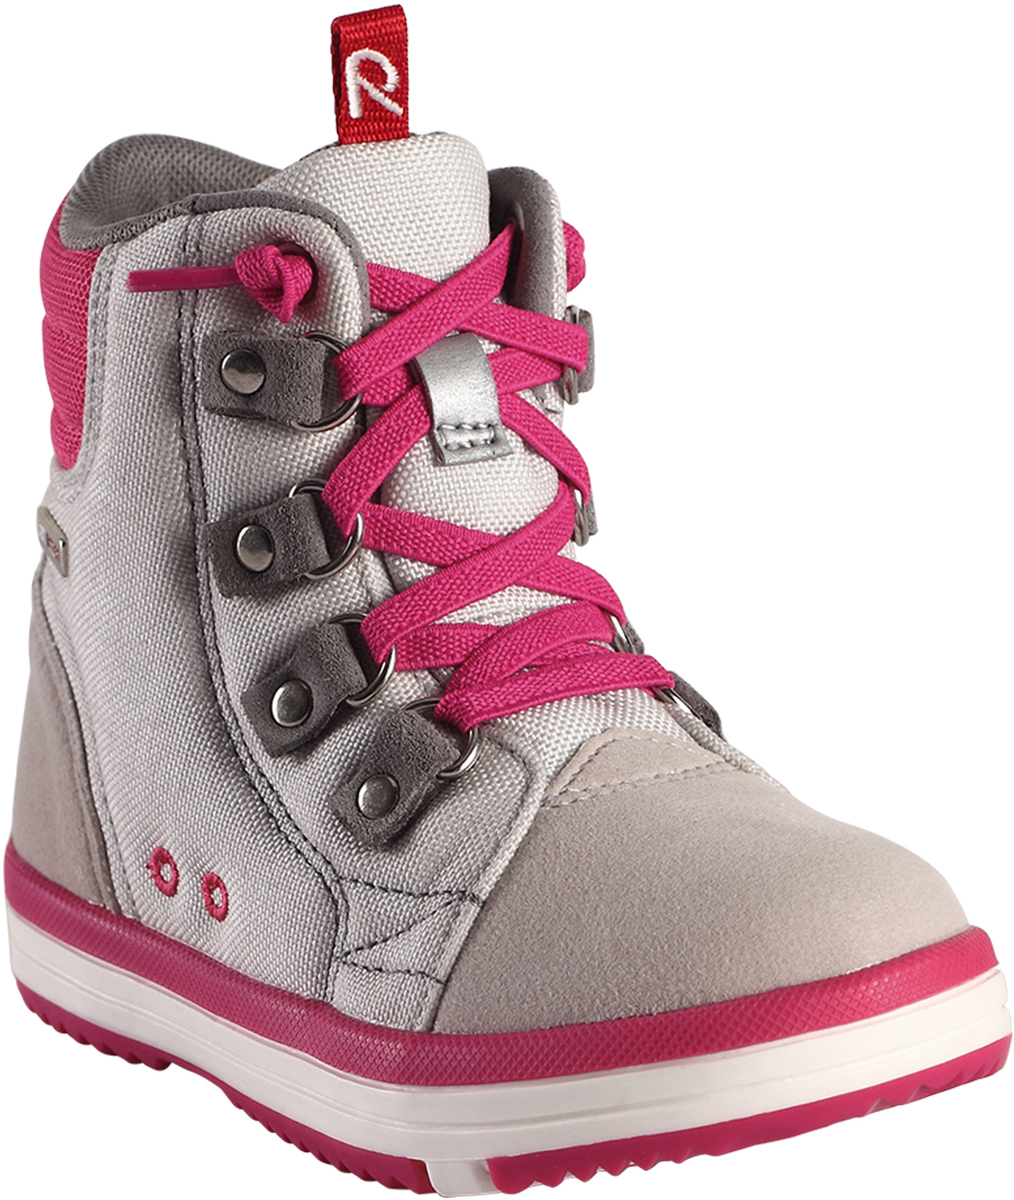 Ботинки детские Reima, цвет: розовый, серый. 5693439140. Размер 36